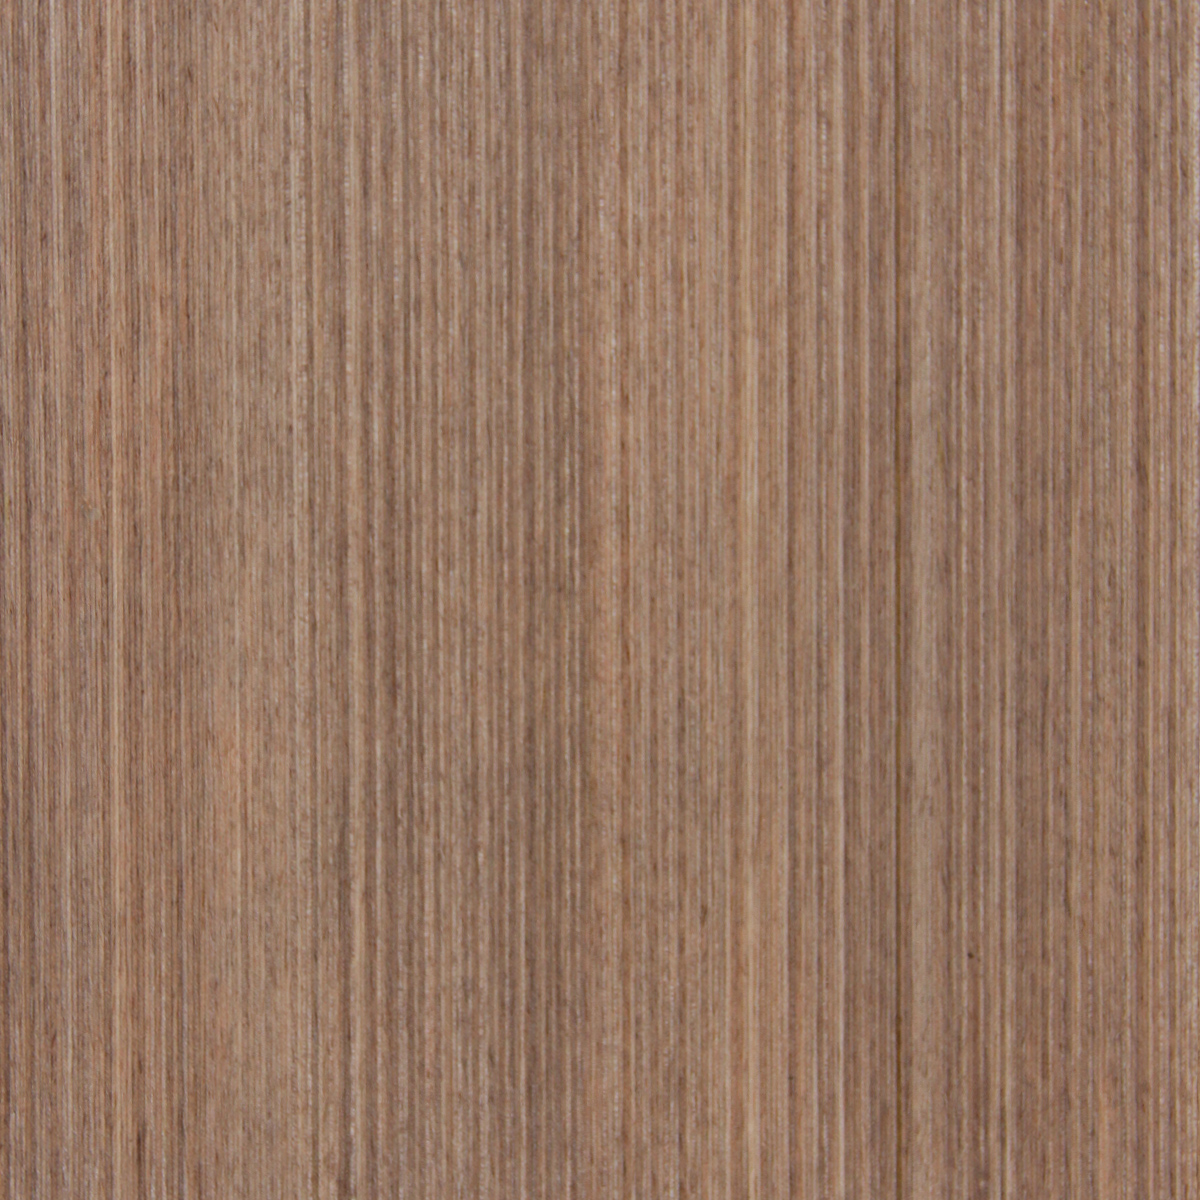 Butternut Rose Truewood - Timber Veneer & Plywood Species